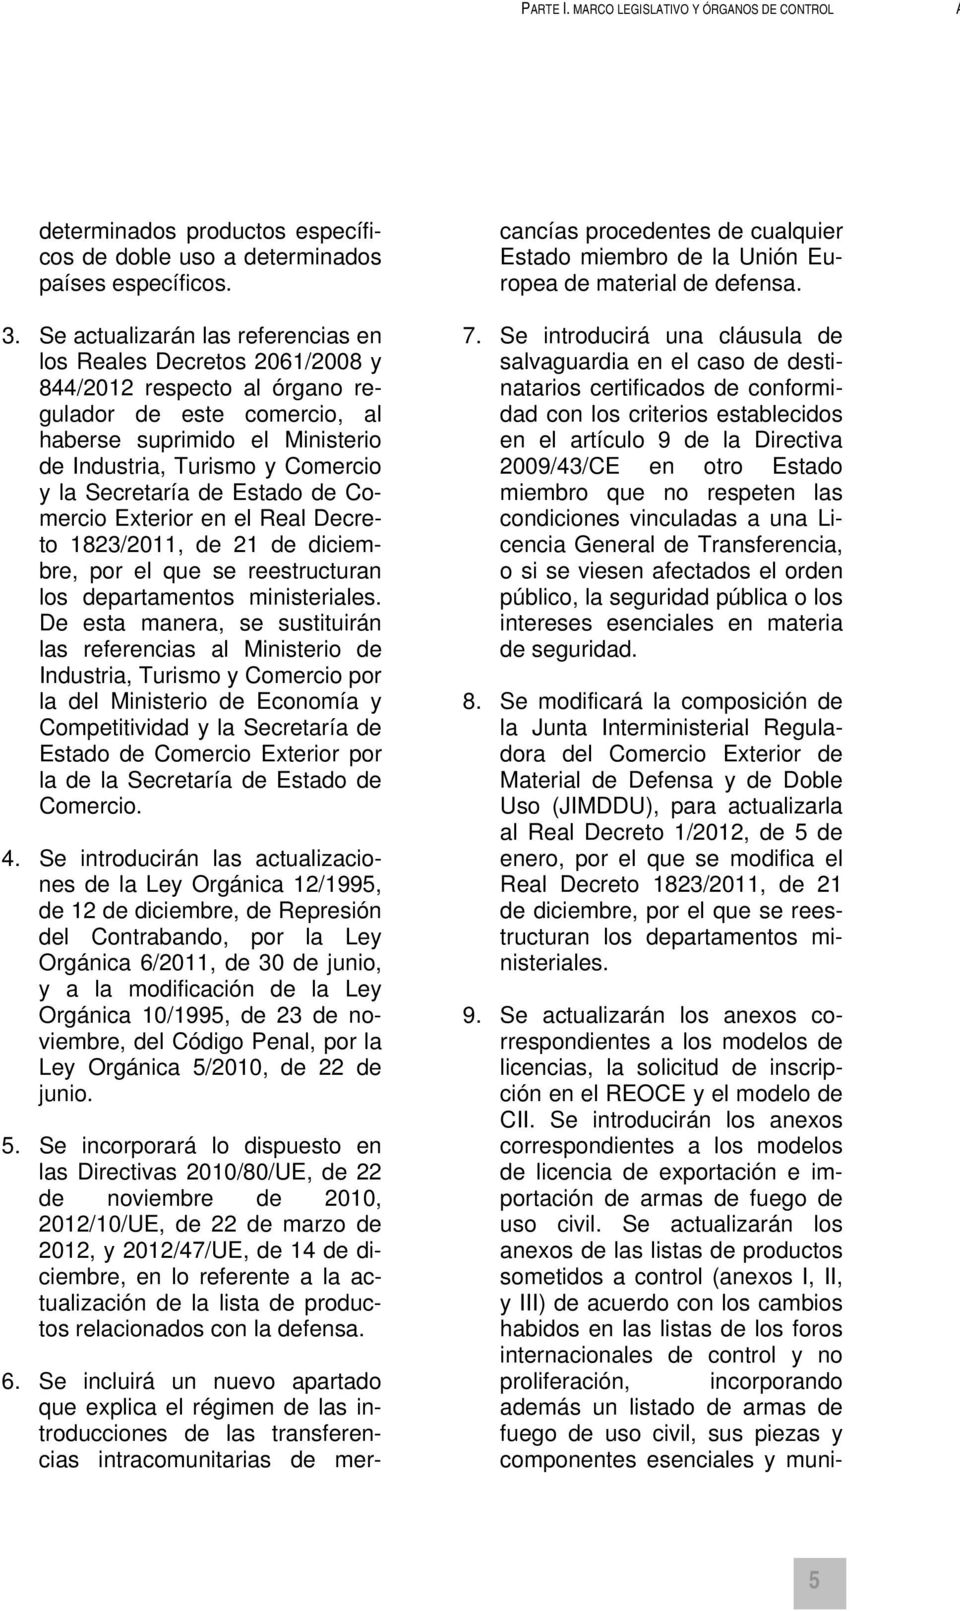 Secretaría de Estado de Comercio Exterior en el Real Decreto 1823/2011, de 21 de diciembre, por el que se reestructuran los departamentos ministeriales.